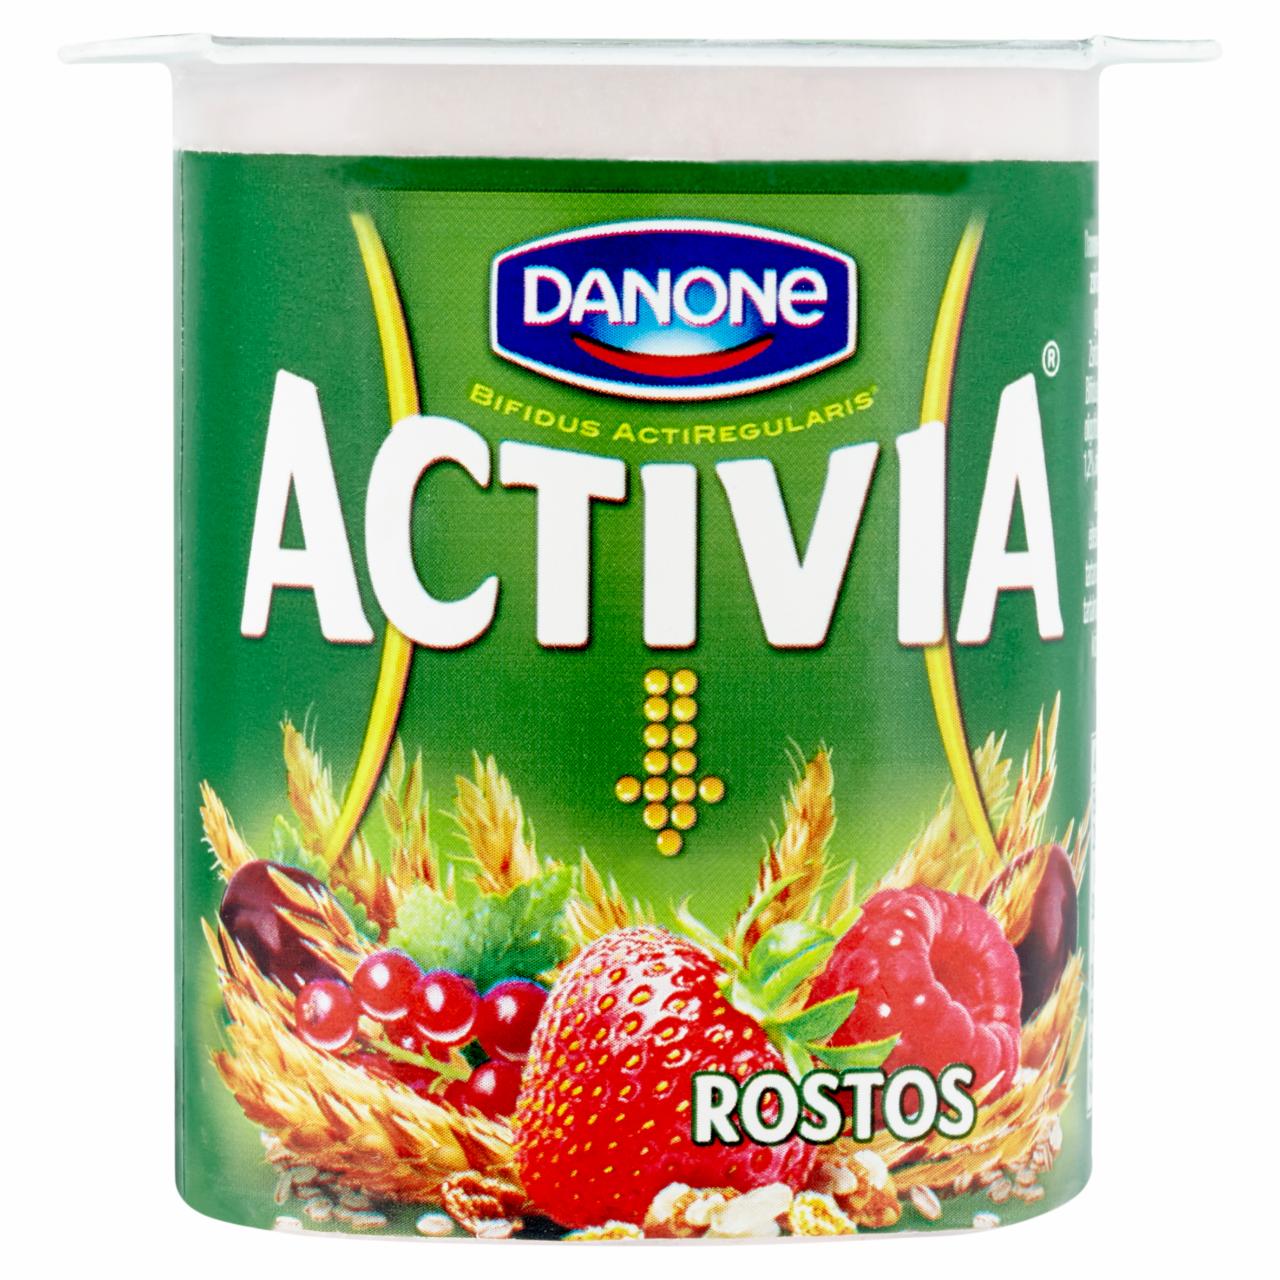 Képek - Danone Activia rostos, élőflórás, zsírszegény joghurt piros gyümölcsökkel és gabonával 125 g